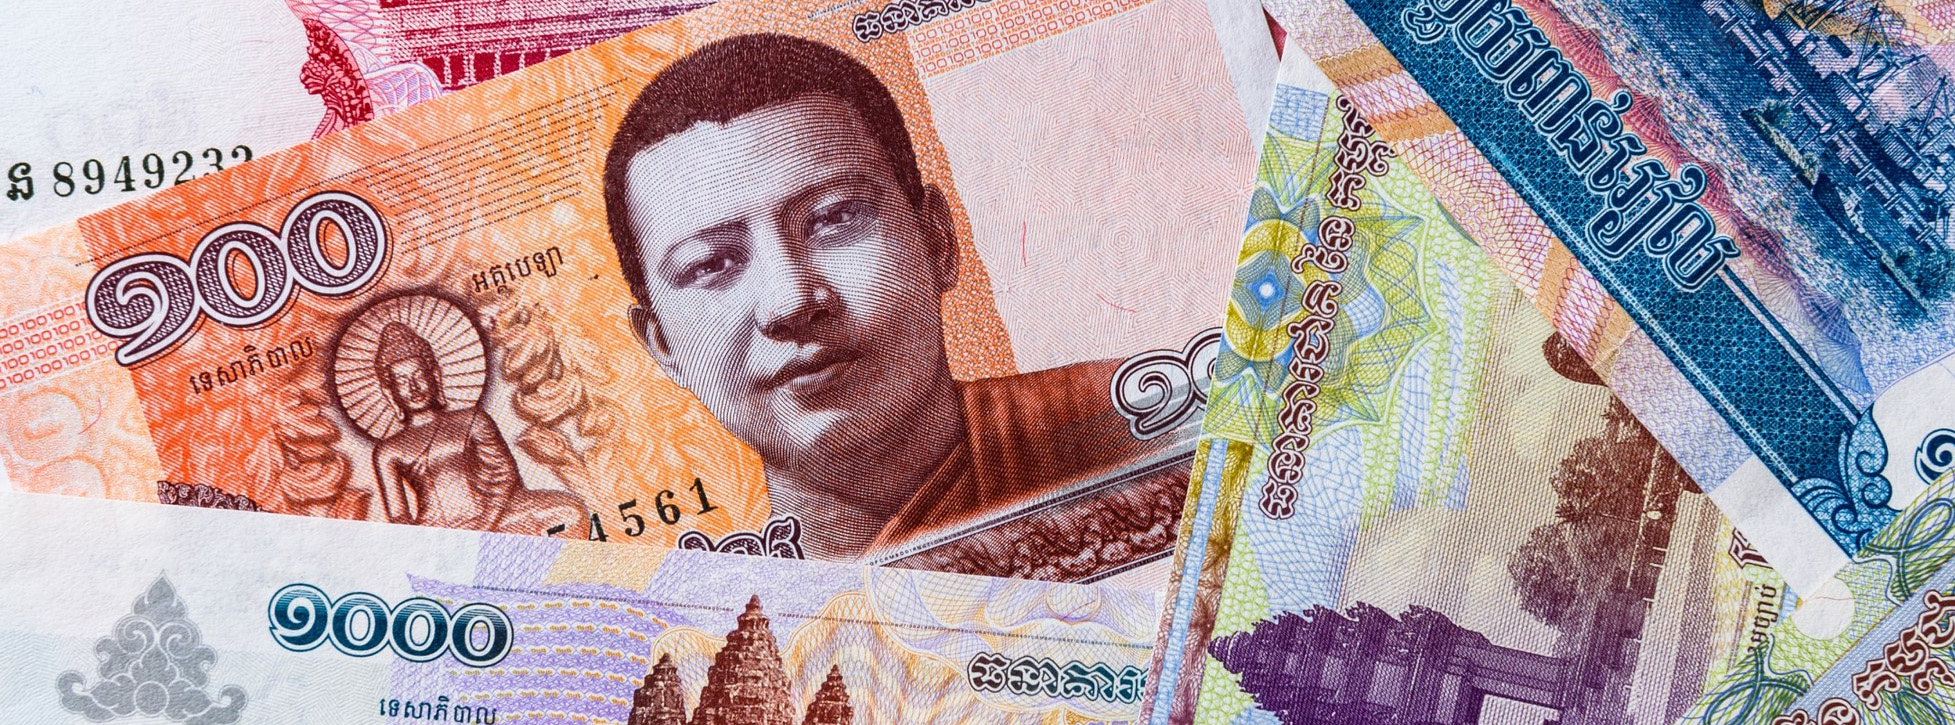 monnaie cambodgienne